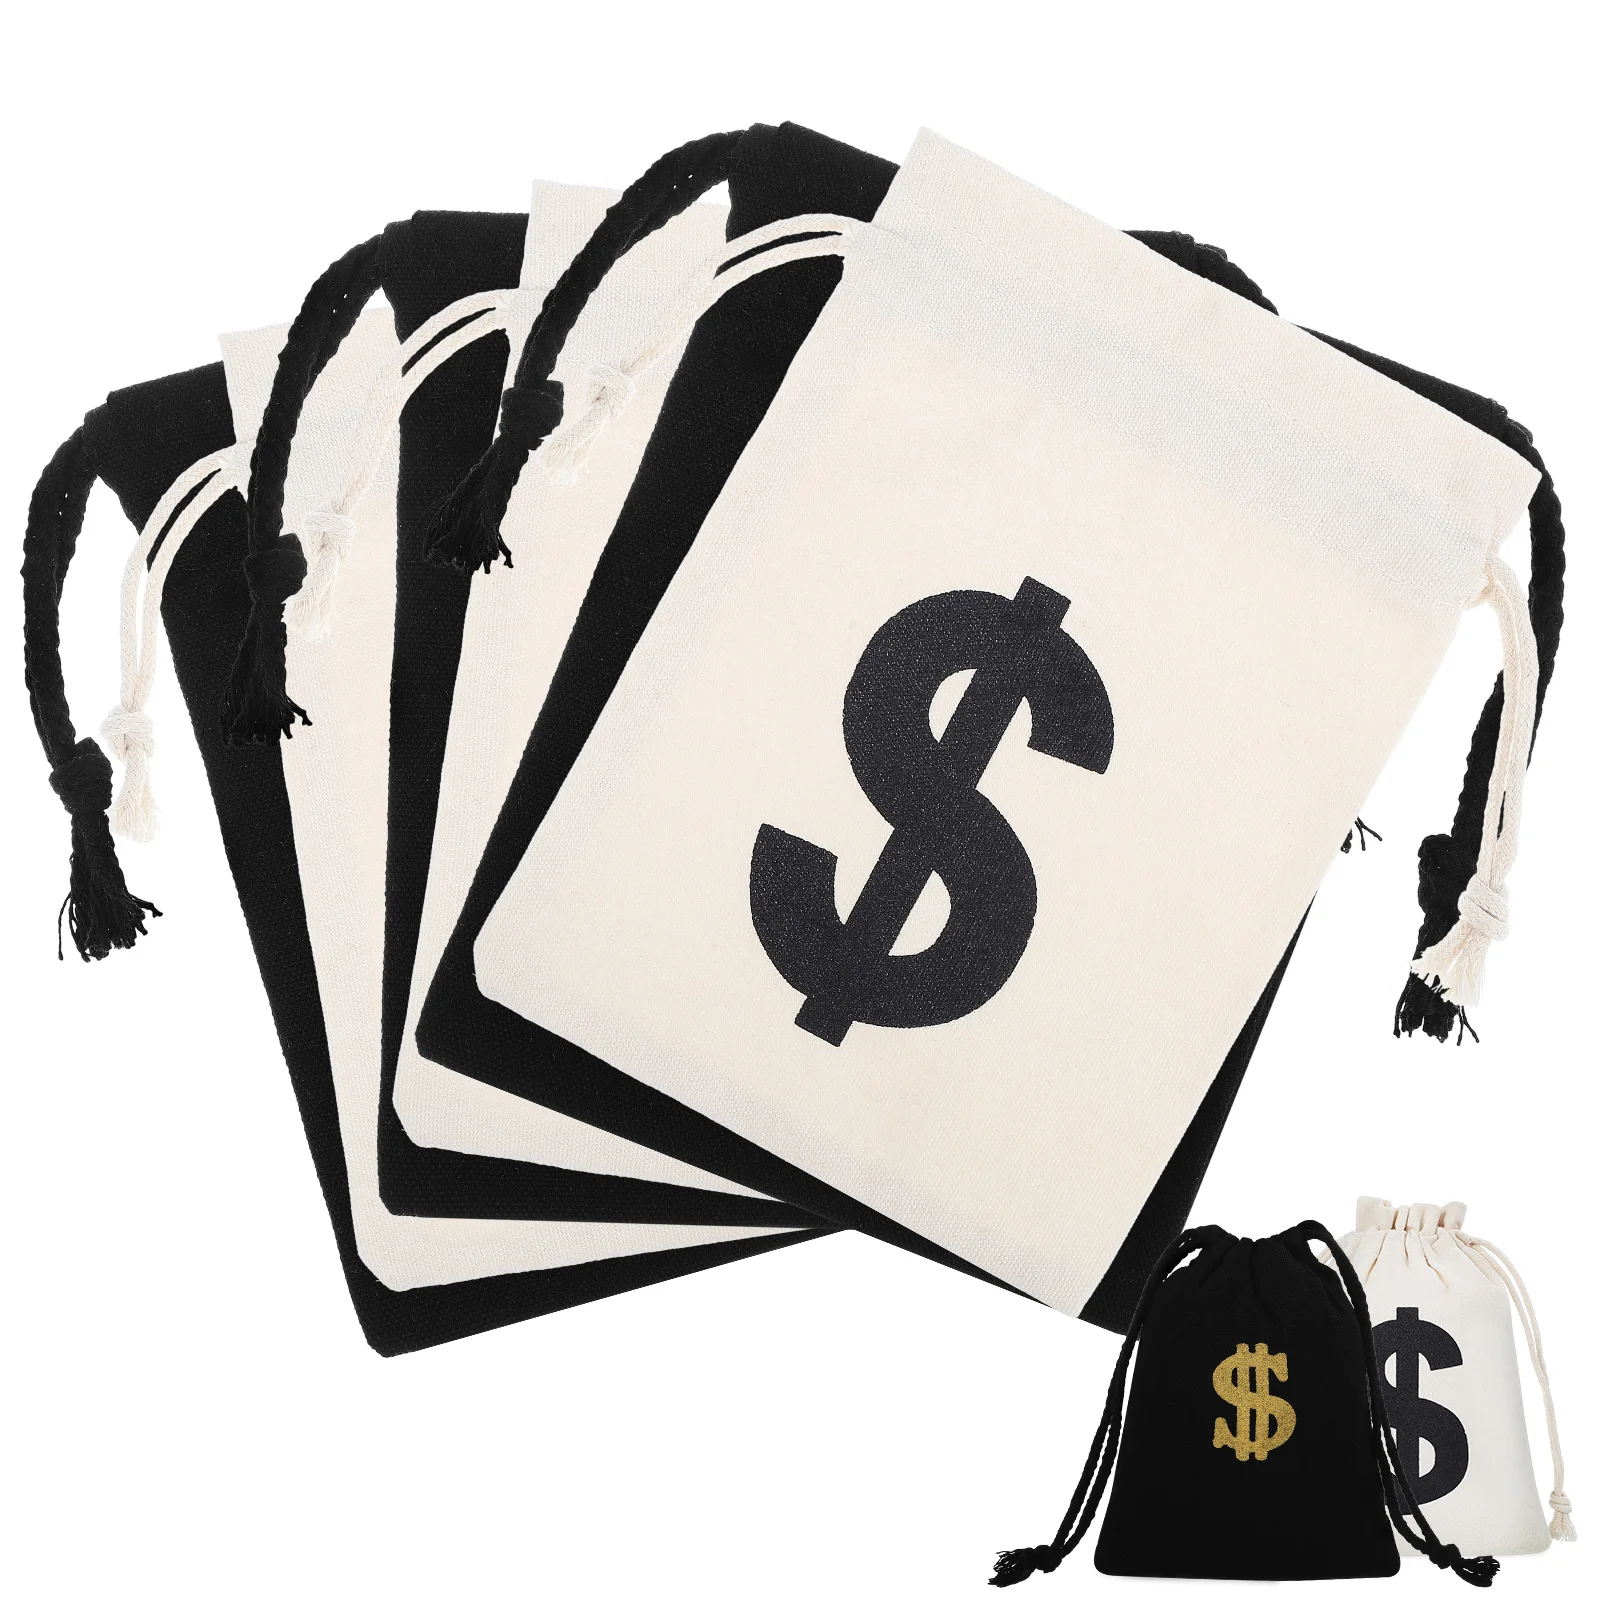 

8 Pcs Money Bag Props Money Drawstring Bag Cotton Drawstring Bags Party Treat Bag Coin Bag Money Bags